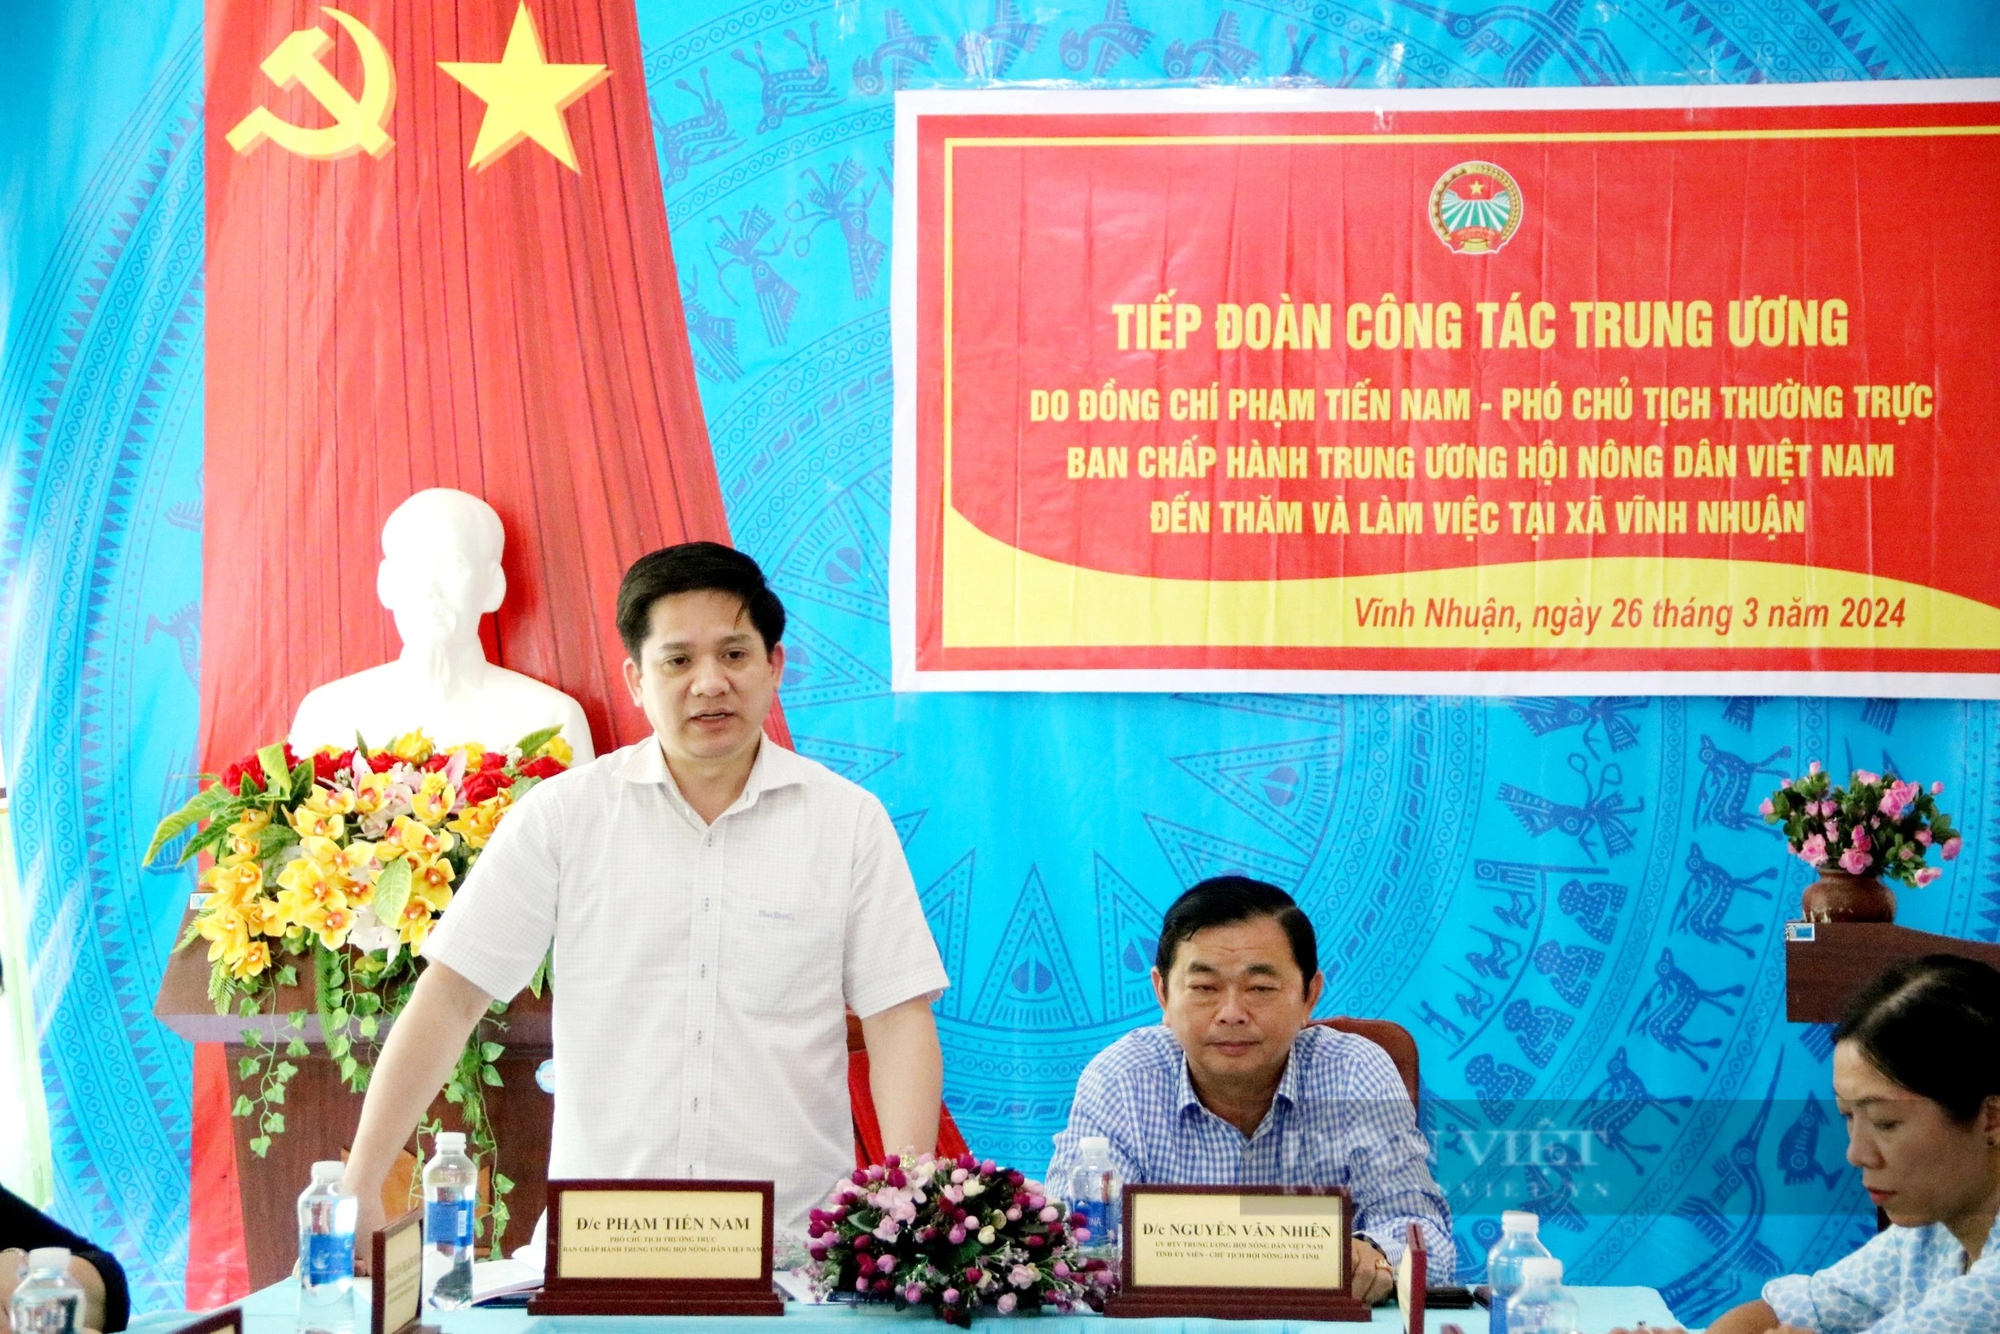 Phó Chủ tịch T.Ư Hội Nông dân Việt Nam Phạm Tiến Nam kiểm tra hoạt động Quỹ Hỗ trợ nông dân tại An Giang- Ảnh 1.